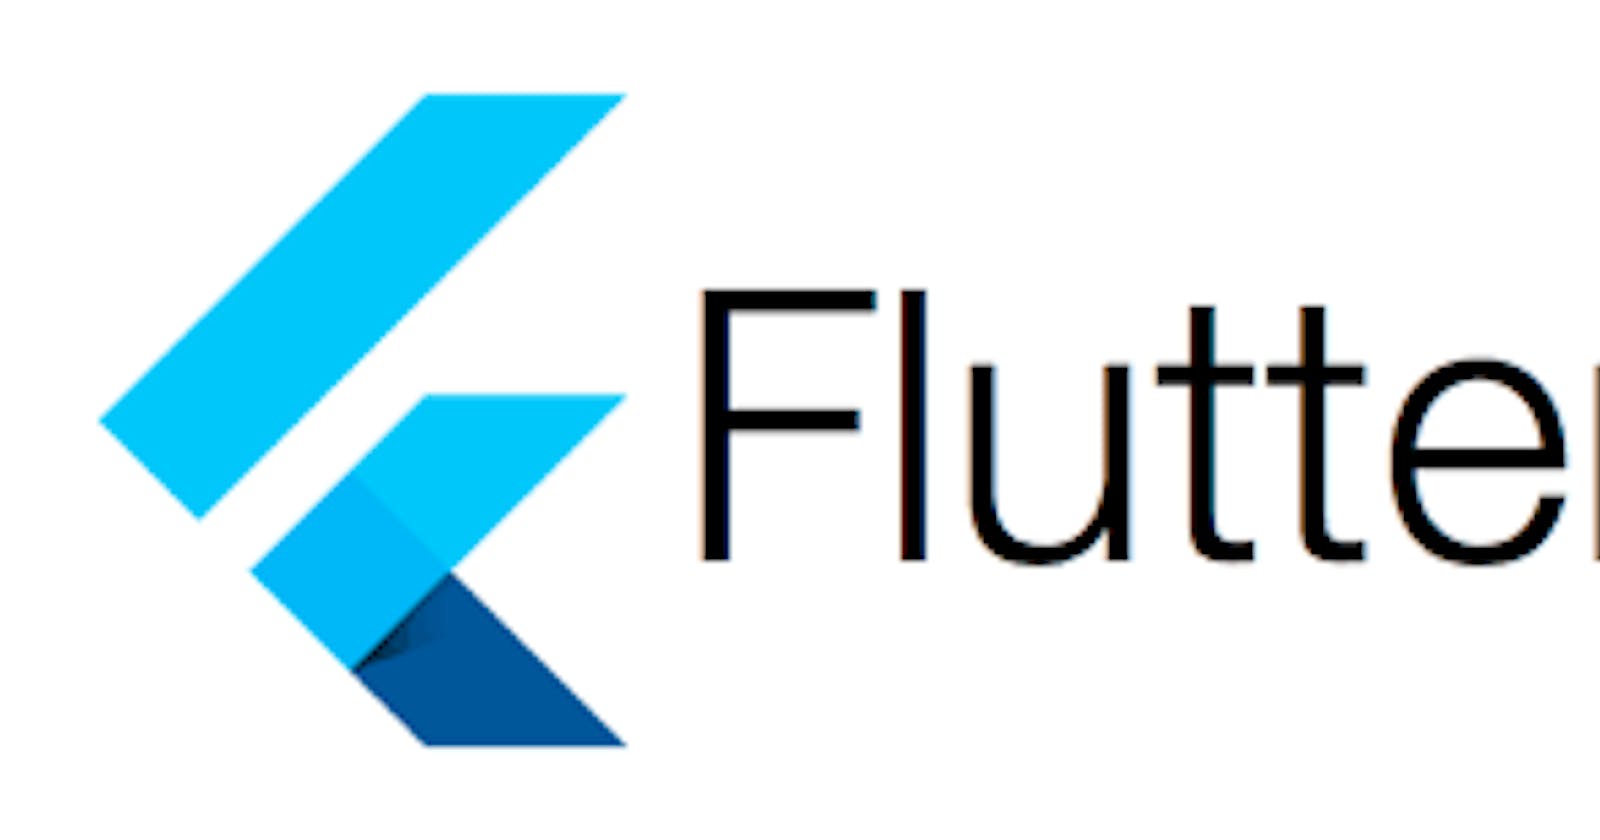 Flutter Mobx Codebase Sharing